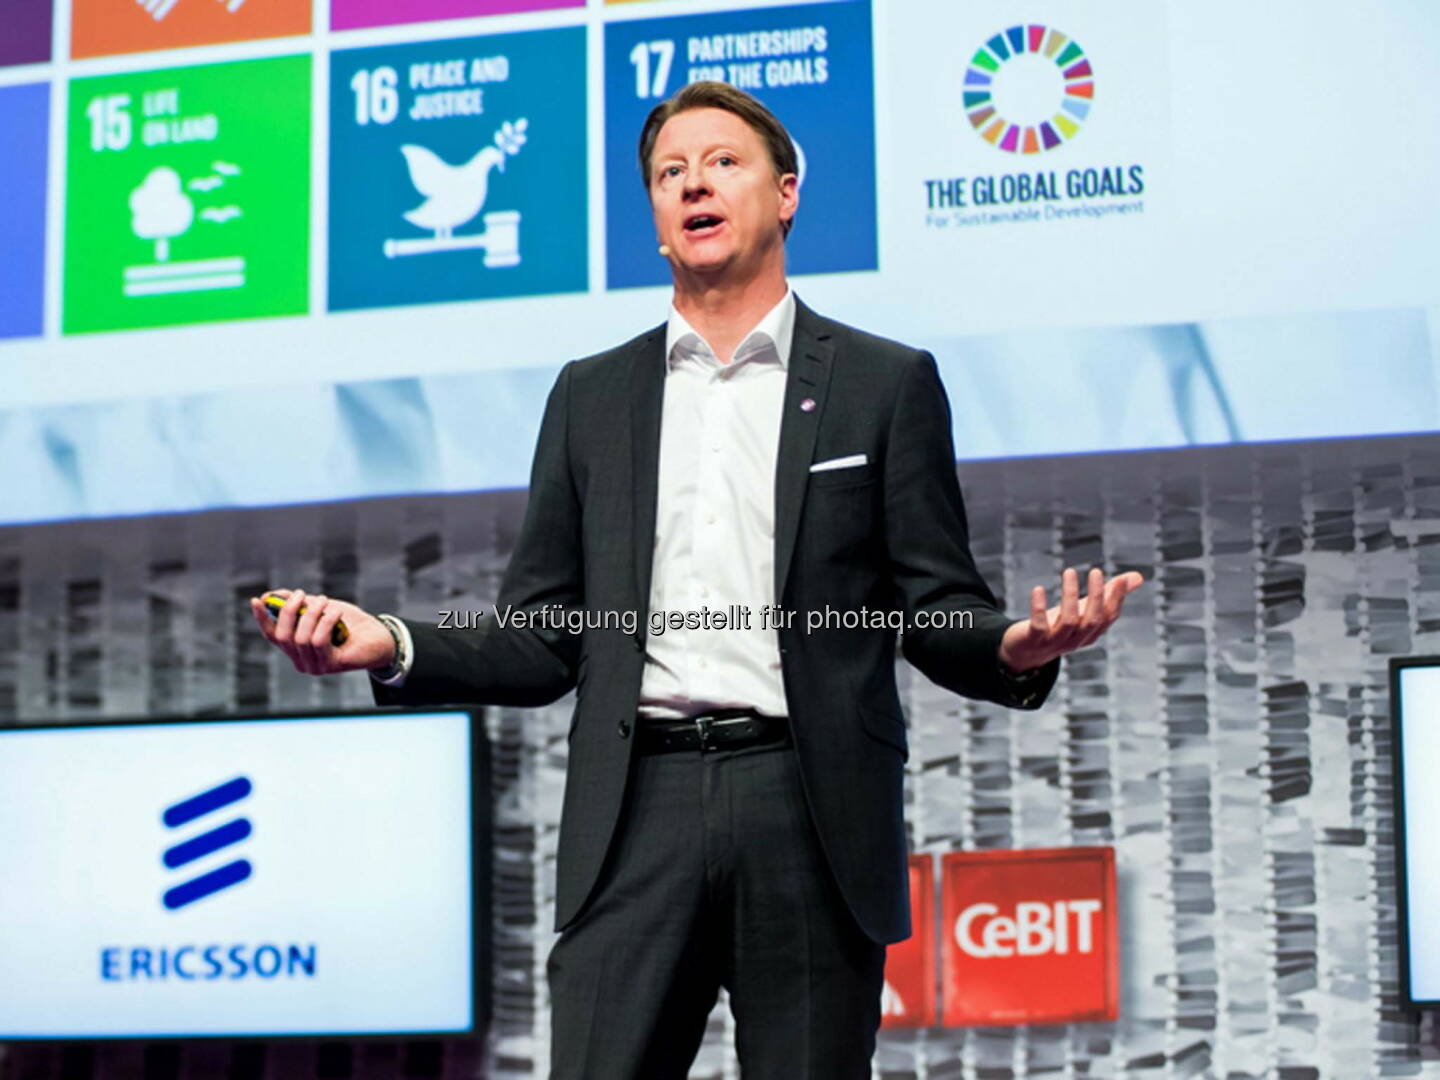 Hans Vestberg (CEO Ericsson) : CeBIT 2016 : Frühe Verfügbarkeit von leistungsstarken, sicheren und flächendeckenden Kommunikationsnetzen ist entscheidend für den Erfolg des digitalen Wandels der Wirtschaft und Gesellschaft : Fotocredit: Ericsson GmbH/Levetzow